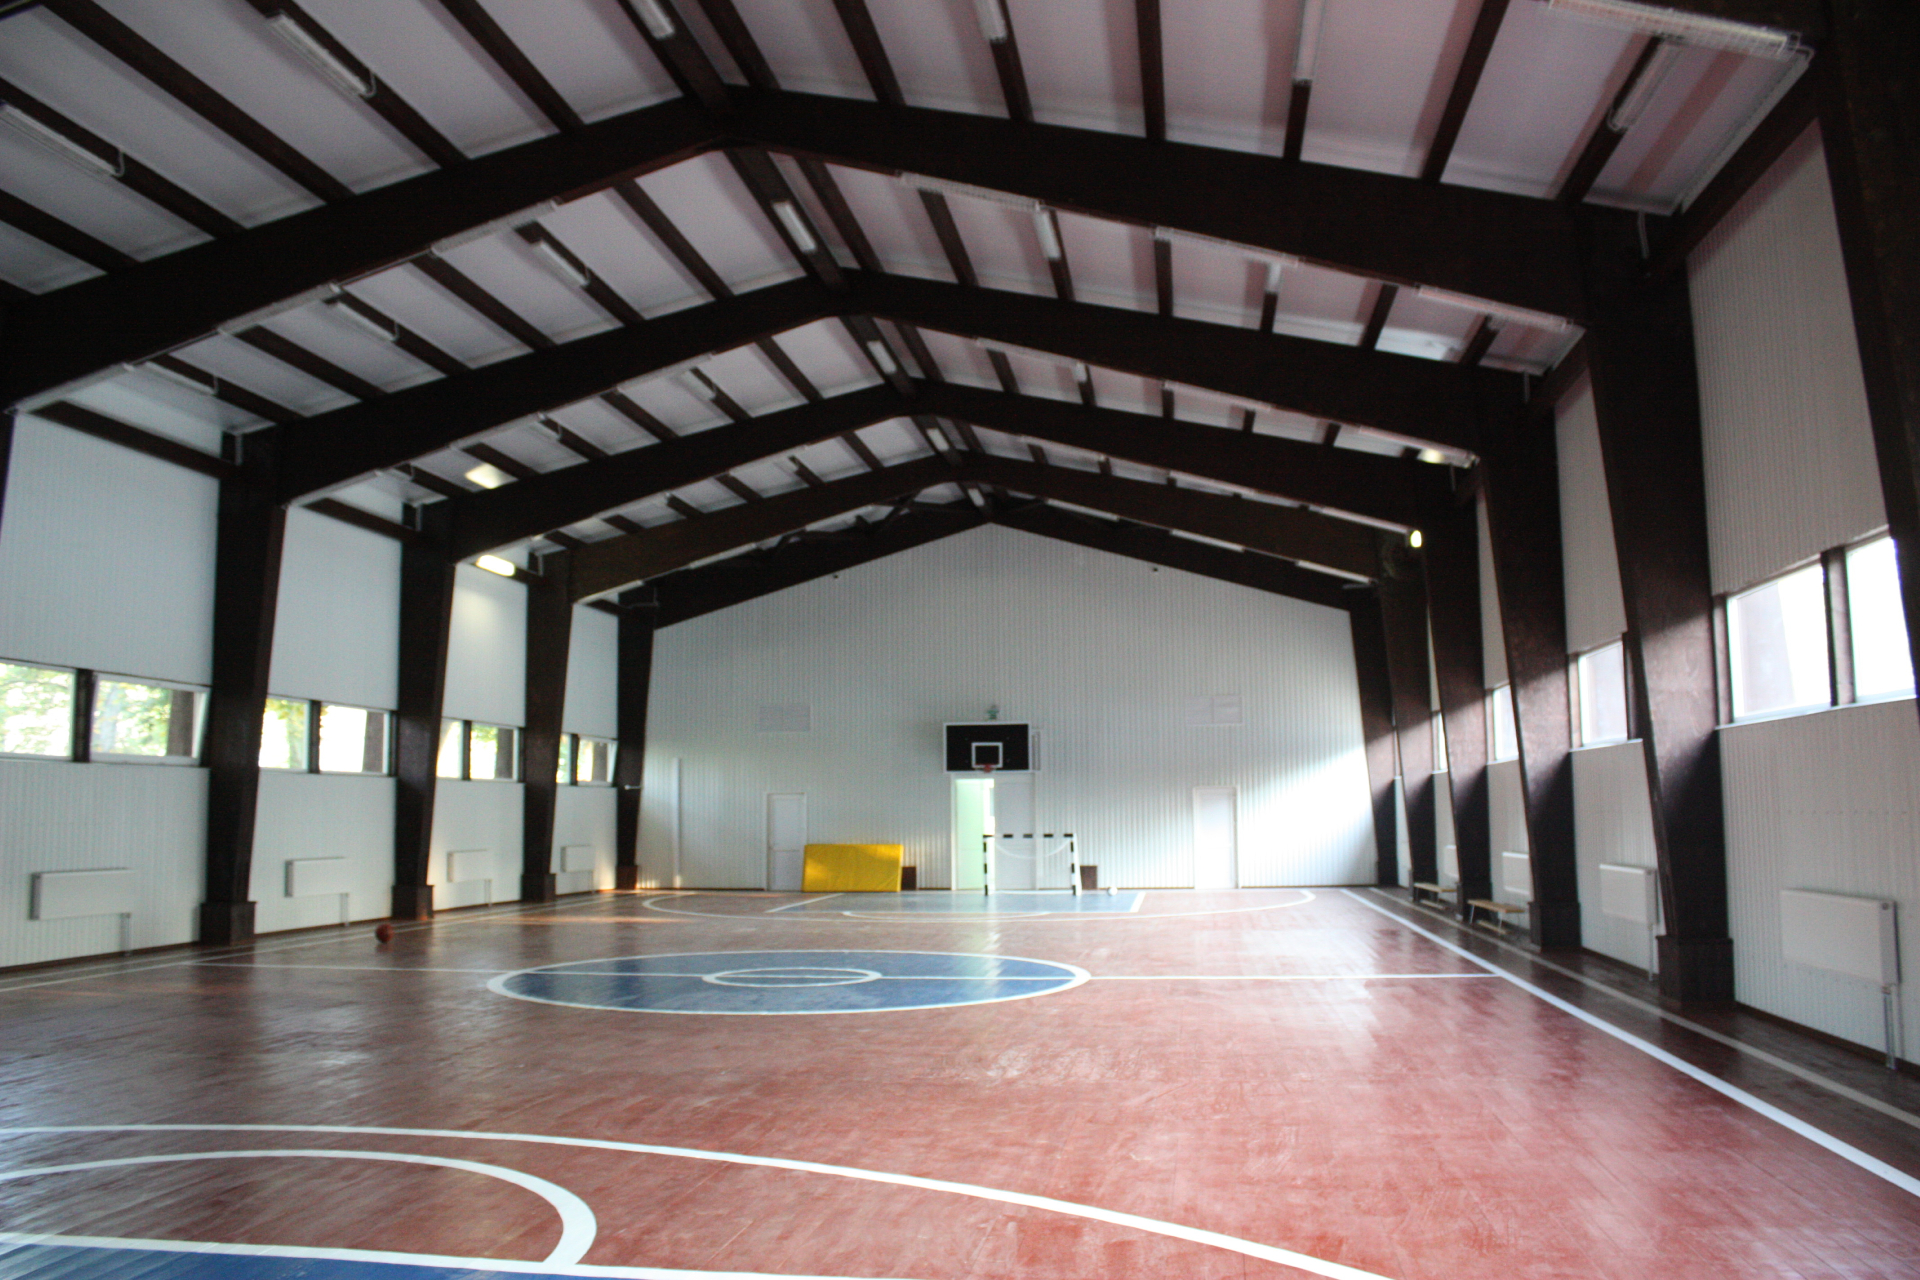 Спортивный зал школы в г. Собинка. Законченный вид